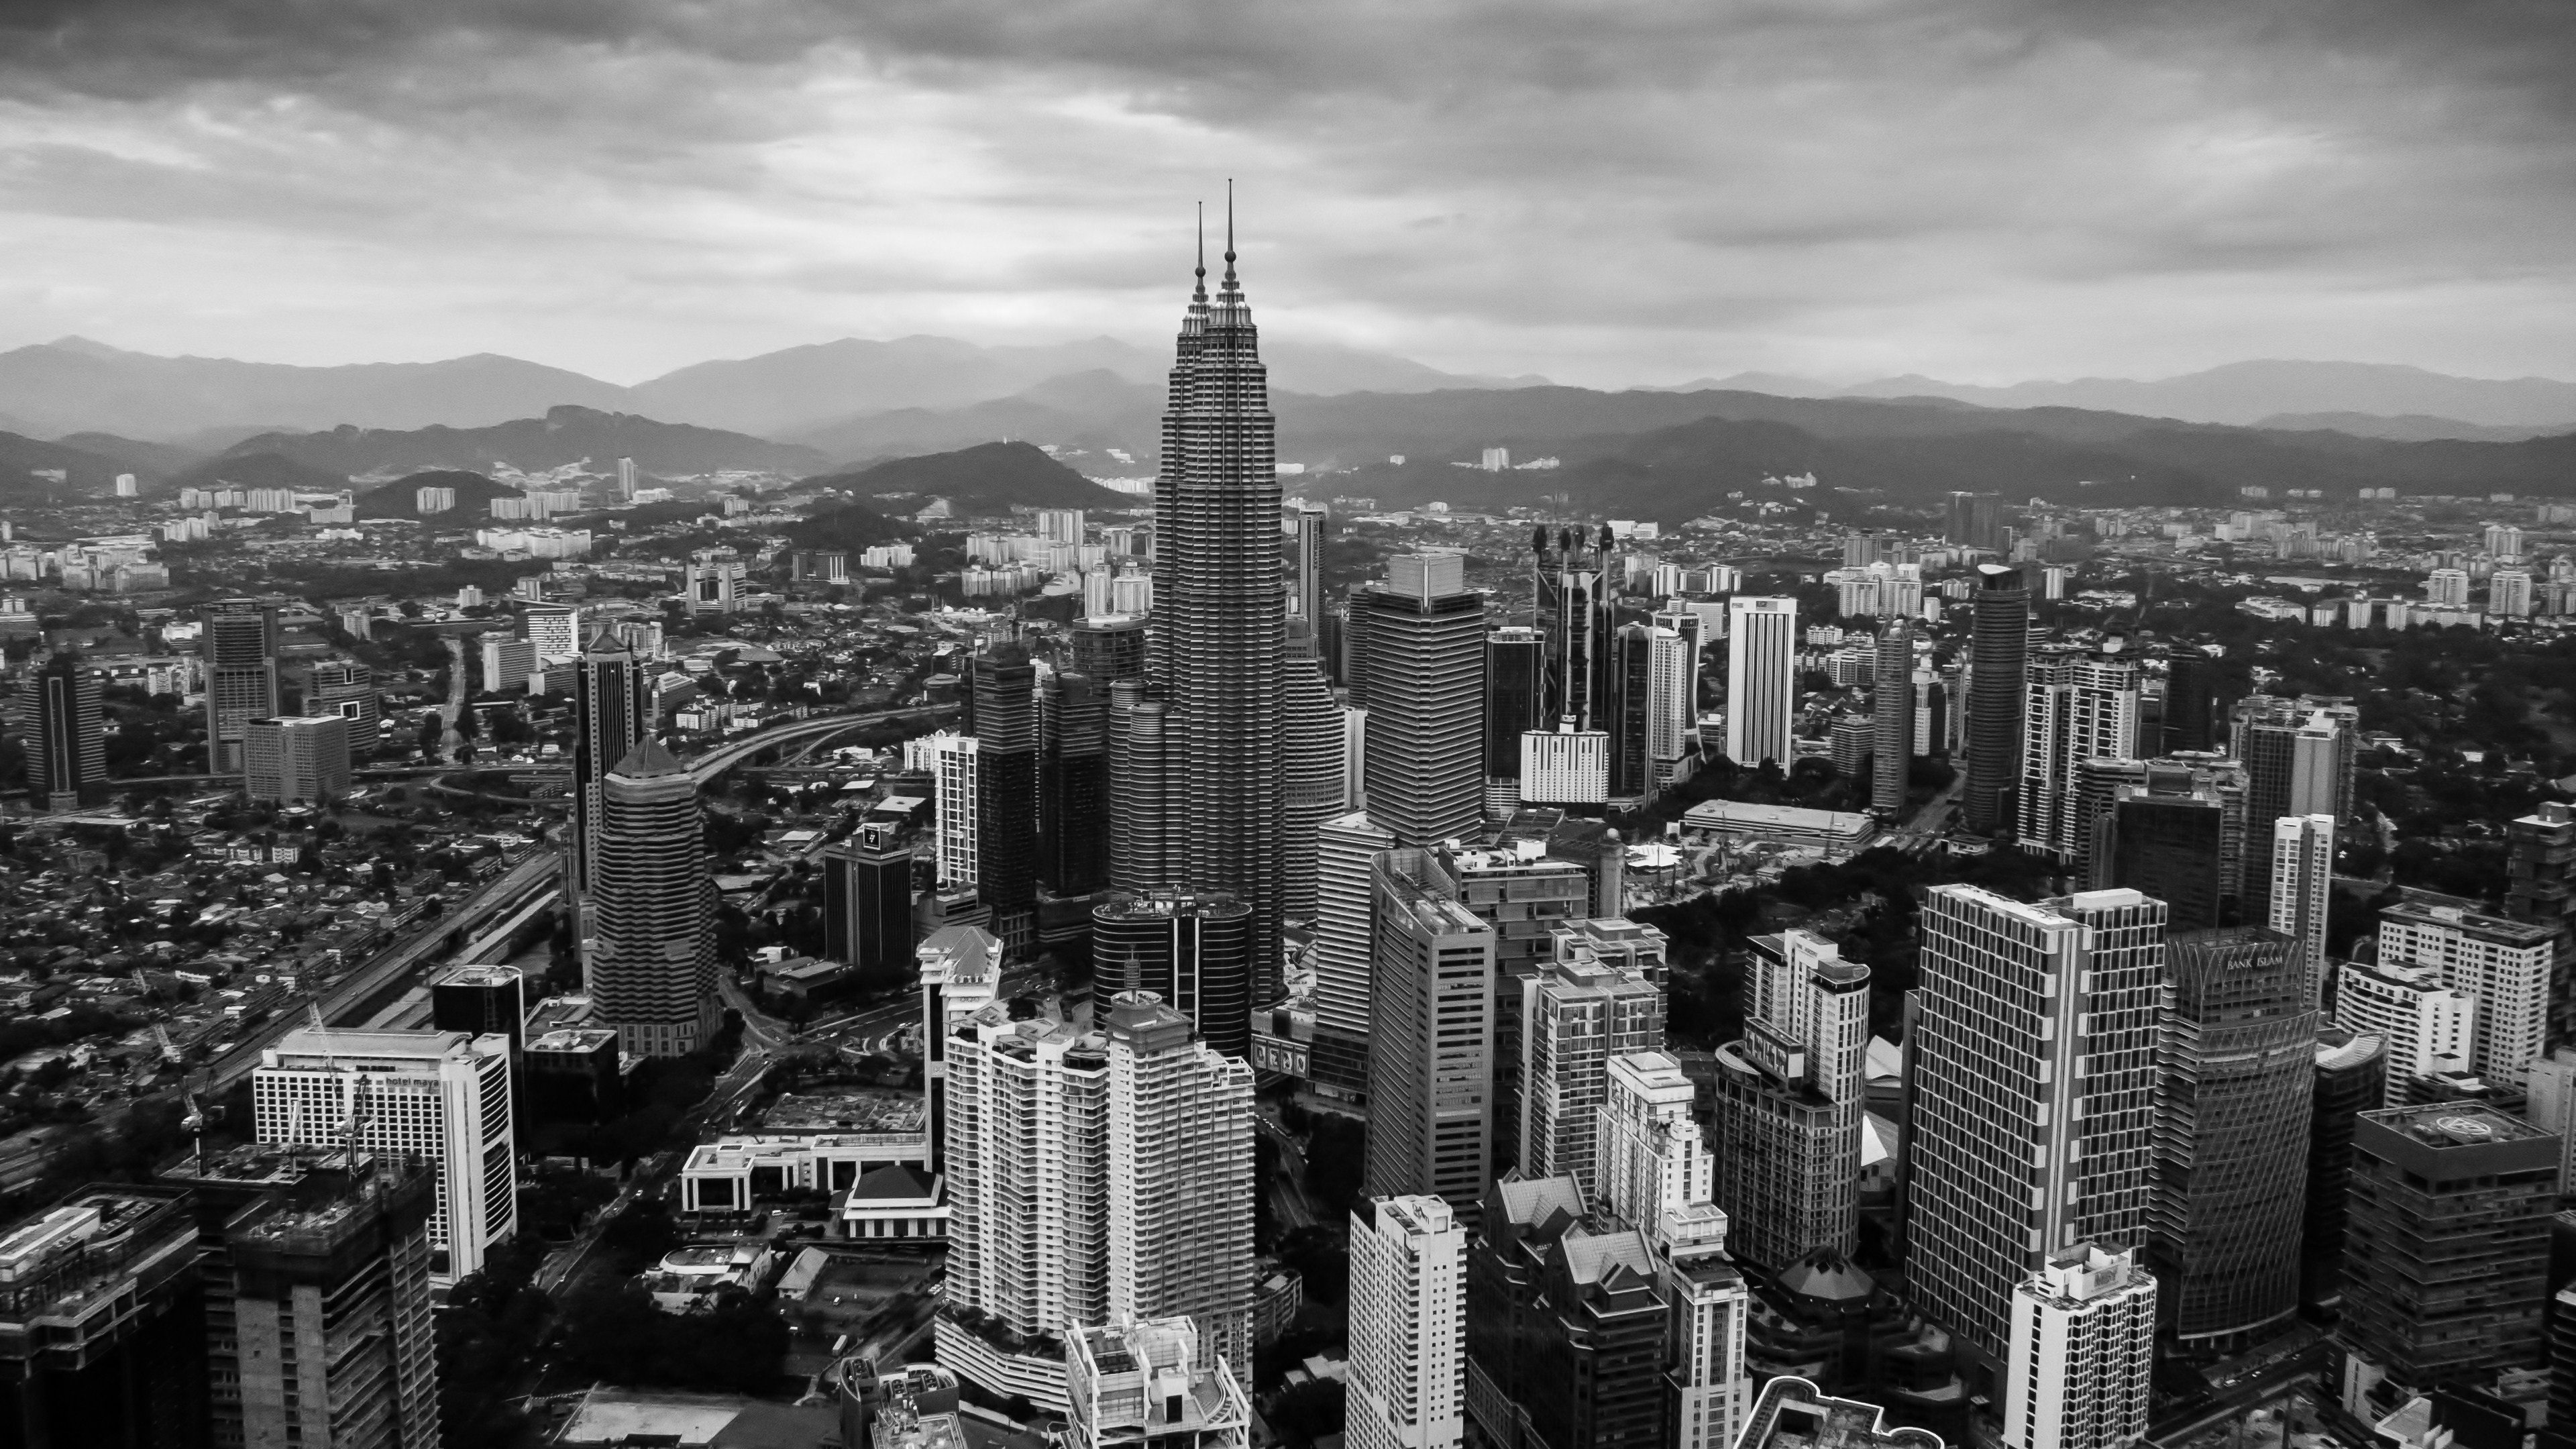 General 3840x2160 city Kuala Lumpur monochrome Malaysia cityscape Petronas Towers